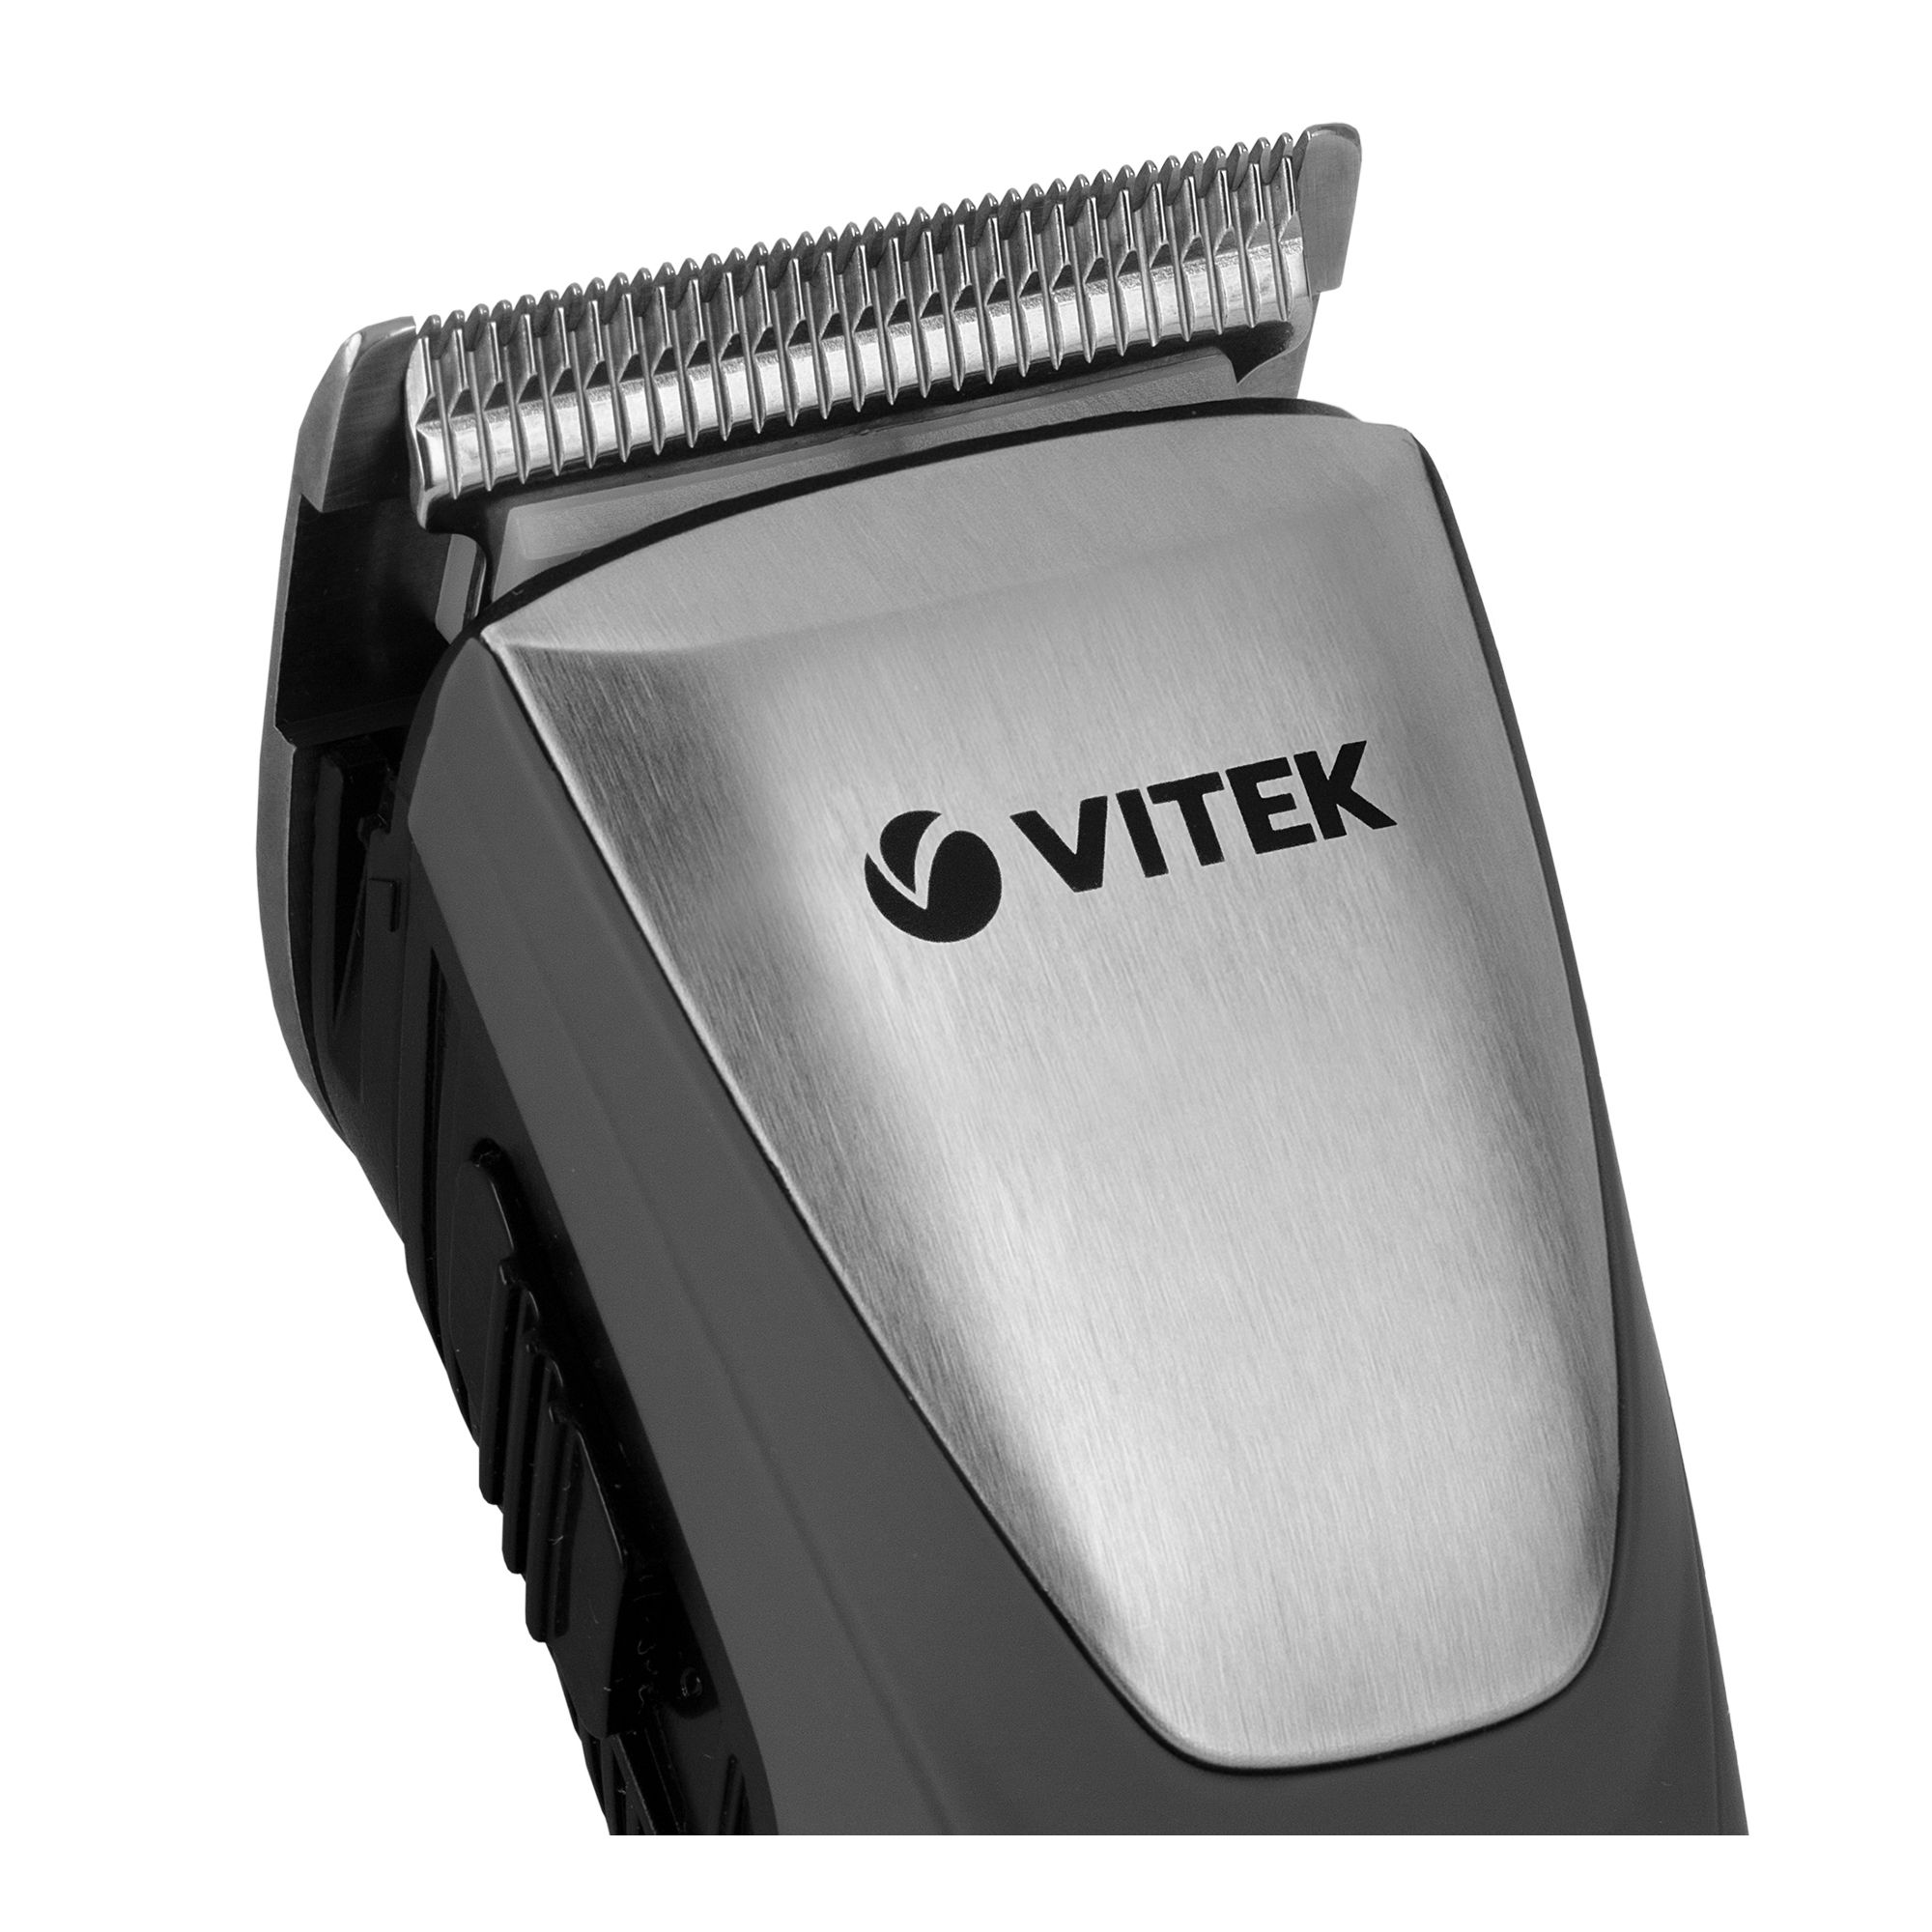 Машинка для стрижки чистка. Vitek VT-2571. Машинка для стрижки Vitek VT-2573. Витек машинка для стрижки волос VT-2553. Машинка для стрижки Vitek VT-2575.